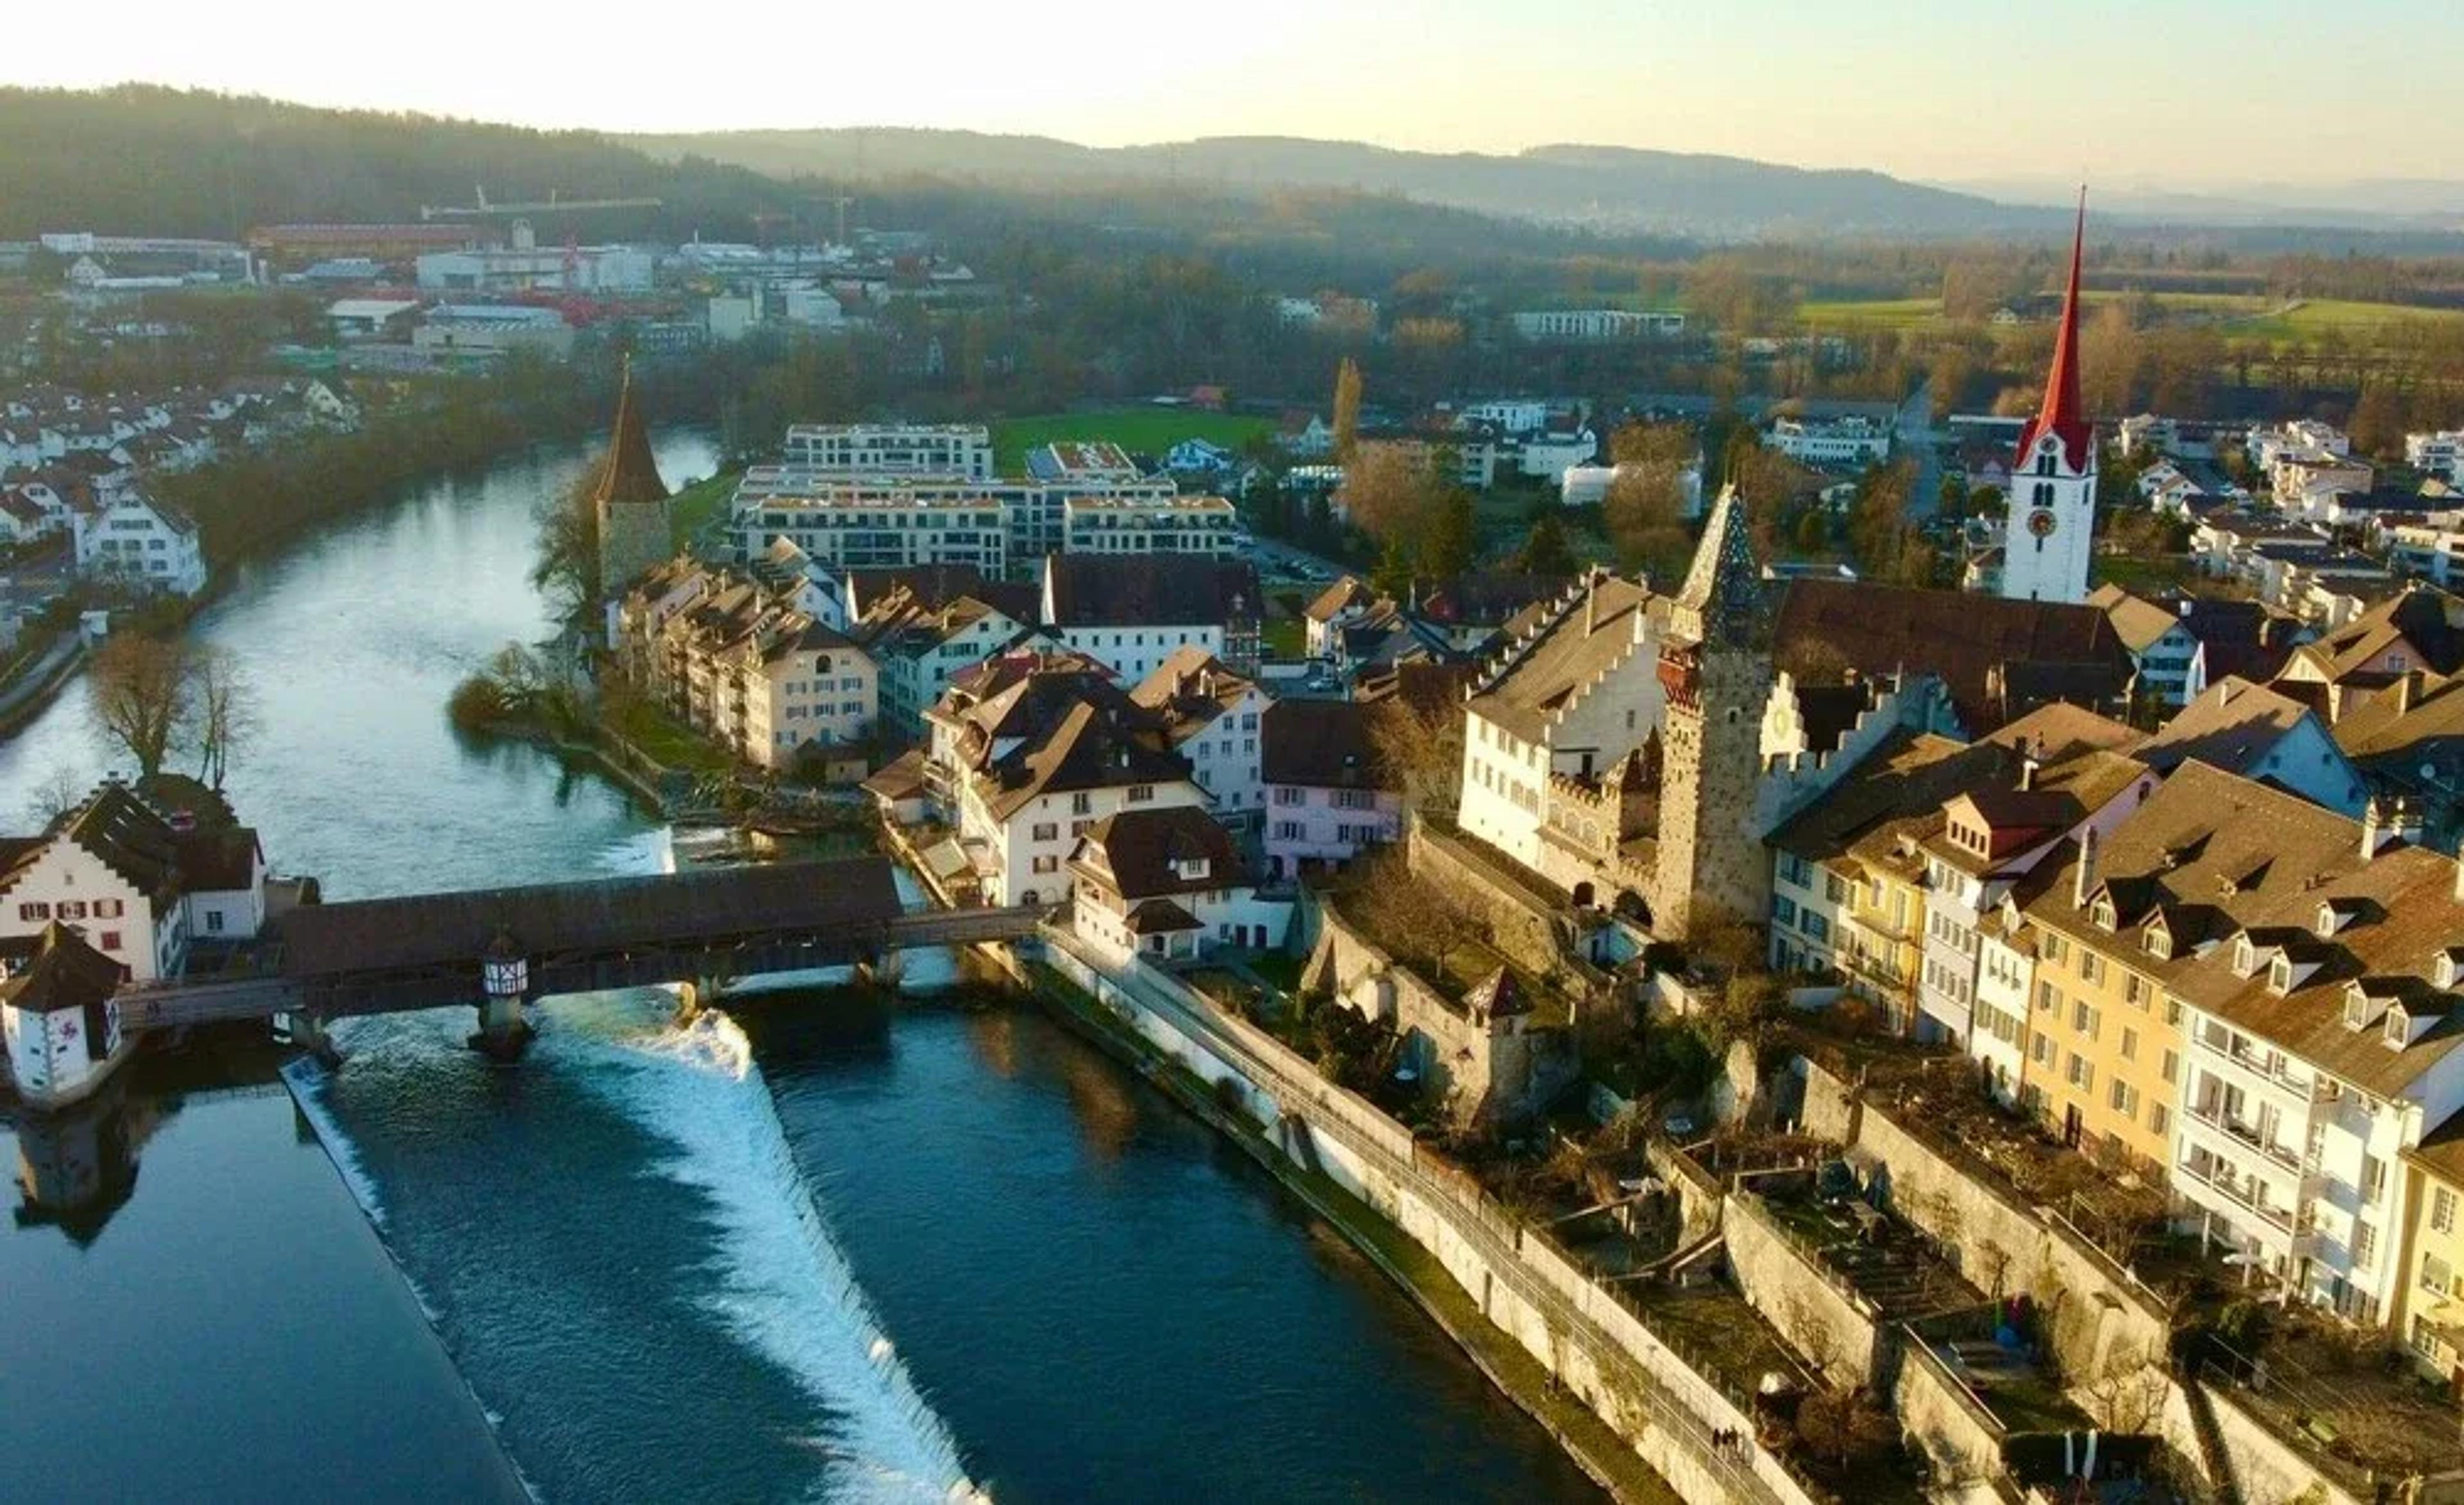 Landschaftsbild Aargau mit Blick auf Fluss und Altstadt